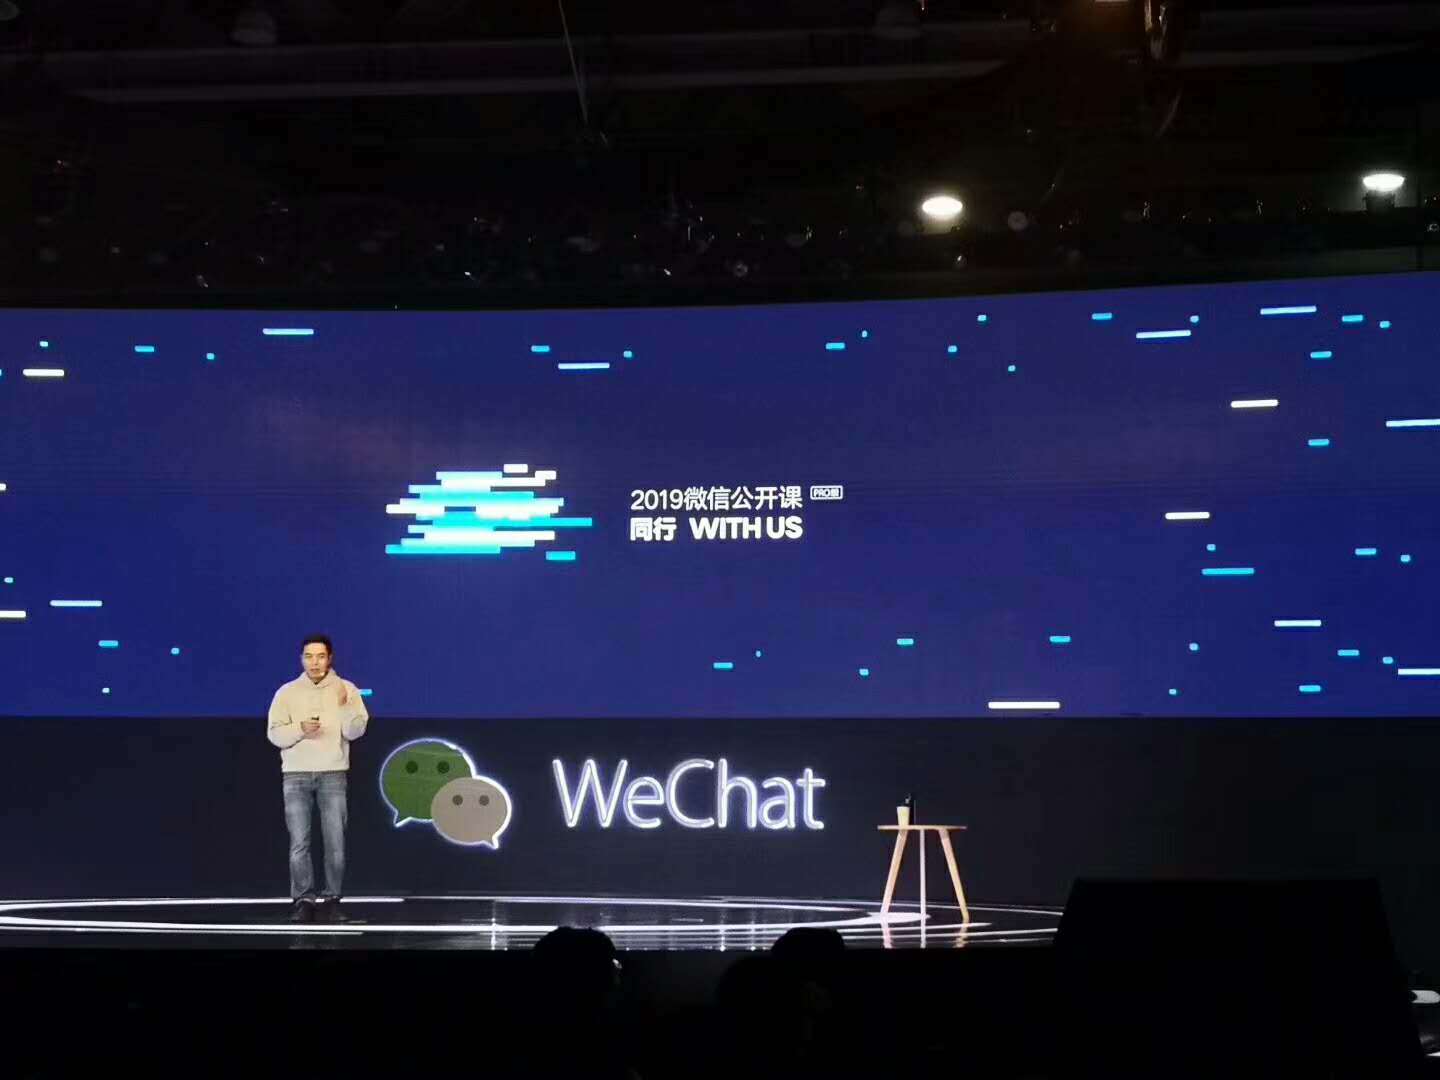 微信之父张小龙最新演讲:微信7.0一上线,5亿